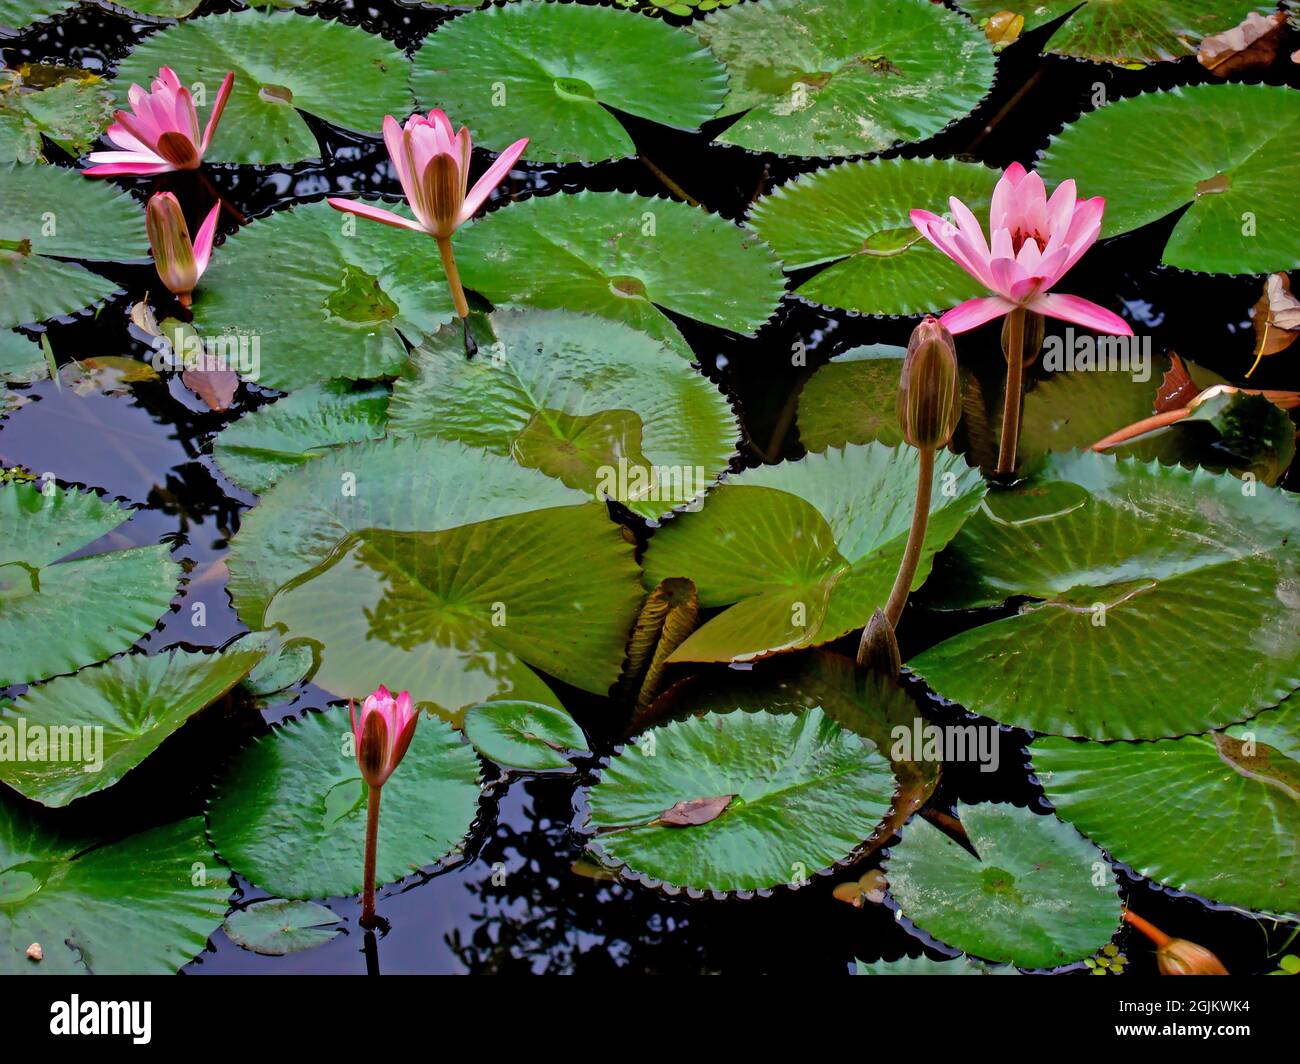 Gigli d'acqua rosa (Ninfea pubescens) sul lago Foto Stock